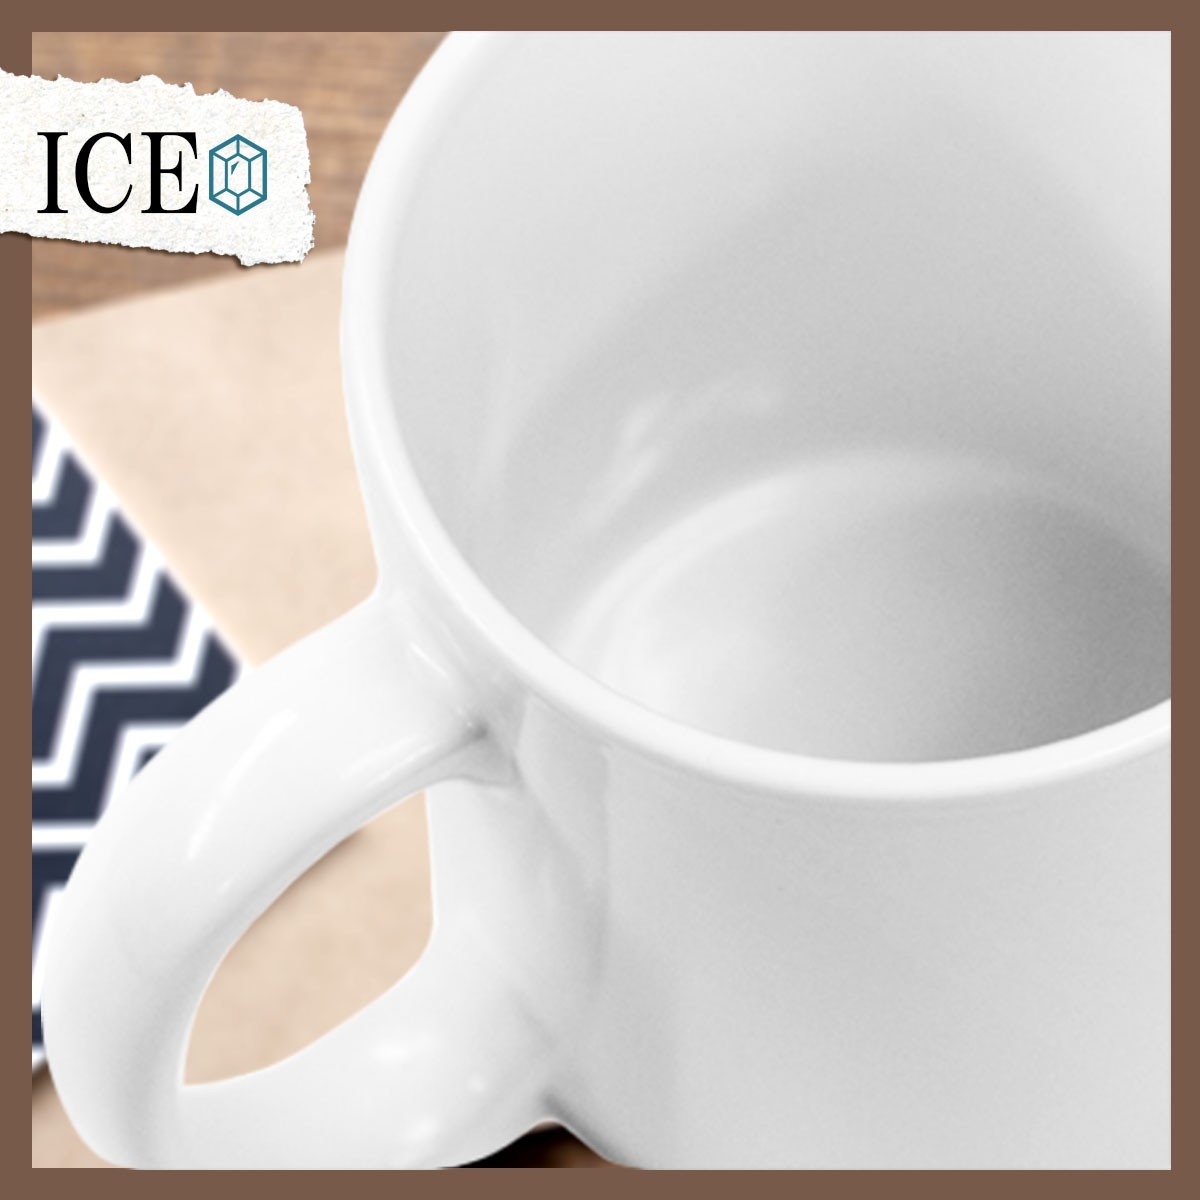 クローバーをくわえているアヒル おもしろ マグカップ コップ 陶器 可愛い かわいい 白 シンプル かわいい カッコイイ シュール 面白い ジ_画像5